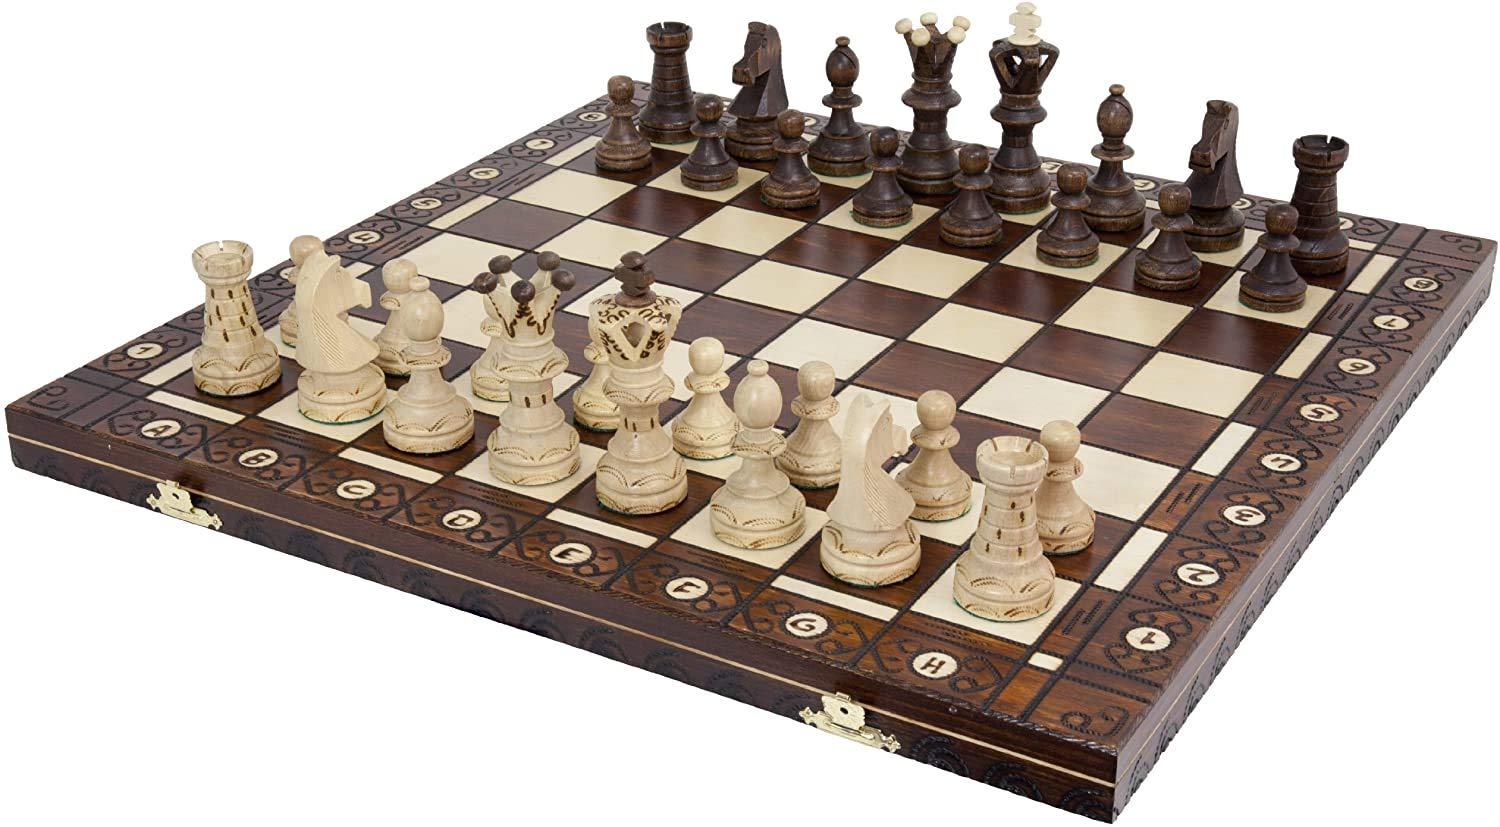 ※重さ:　約2.3 kg ※パッケージサイズ:　約53 x 27 x 7 cm ※輸入品です。 ※説明は英語表記になります。 ※海外からの配送の為、納期に遅延が発生する場合がございます。 *Handmade European Wooden Chess Set with 21 Inch Board and Hand Carved Chess Pieces